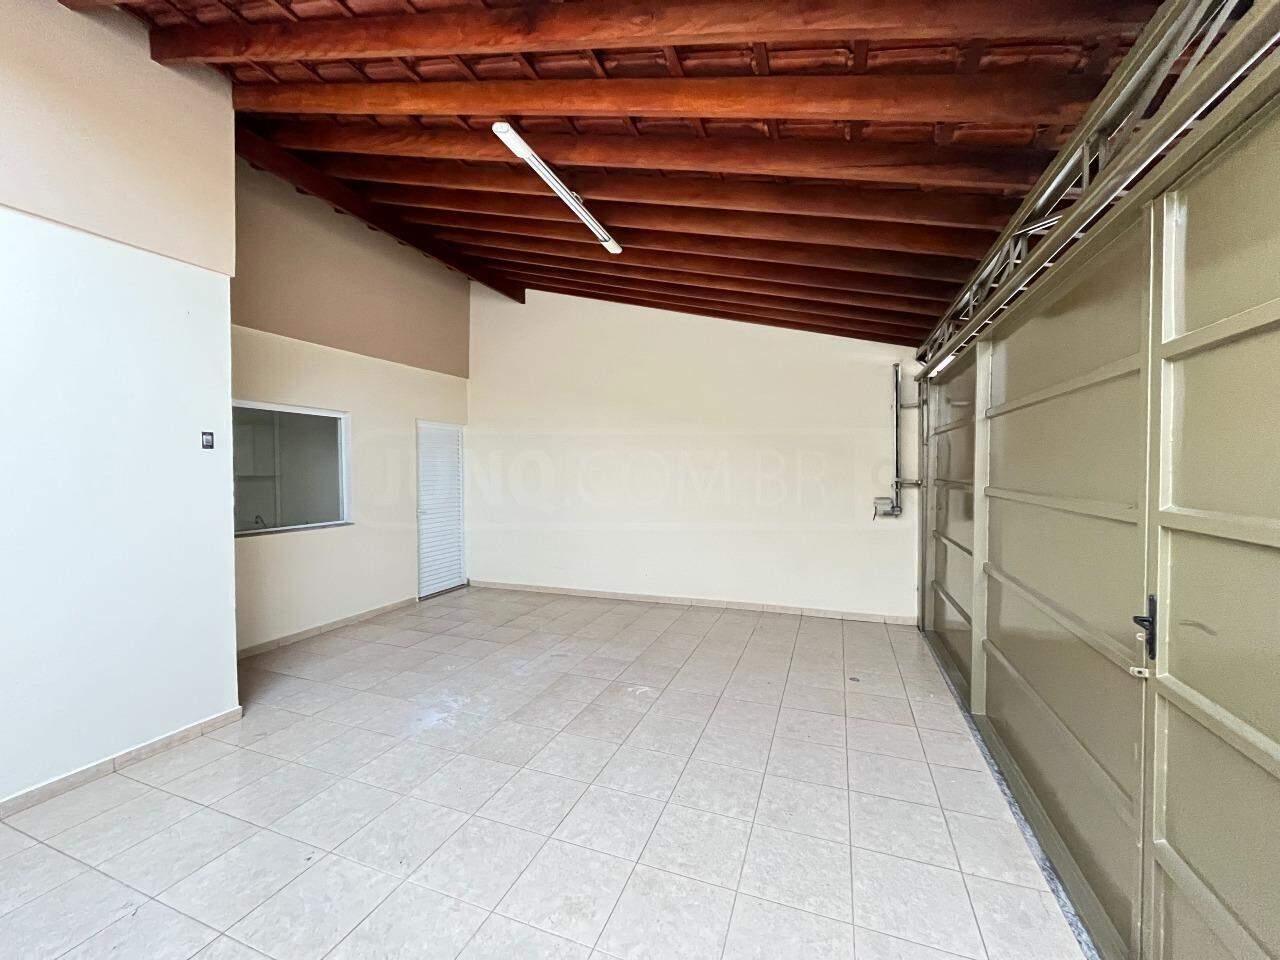 Casa à venda, 3 quartos, sendo 1 suíte, 2 vagas, no bairro Residencial Portal da Água Branca em Piracicaba - SP